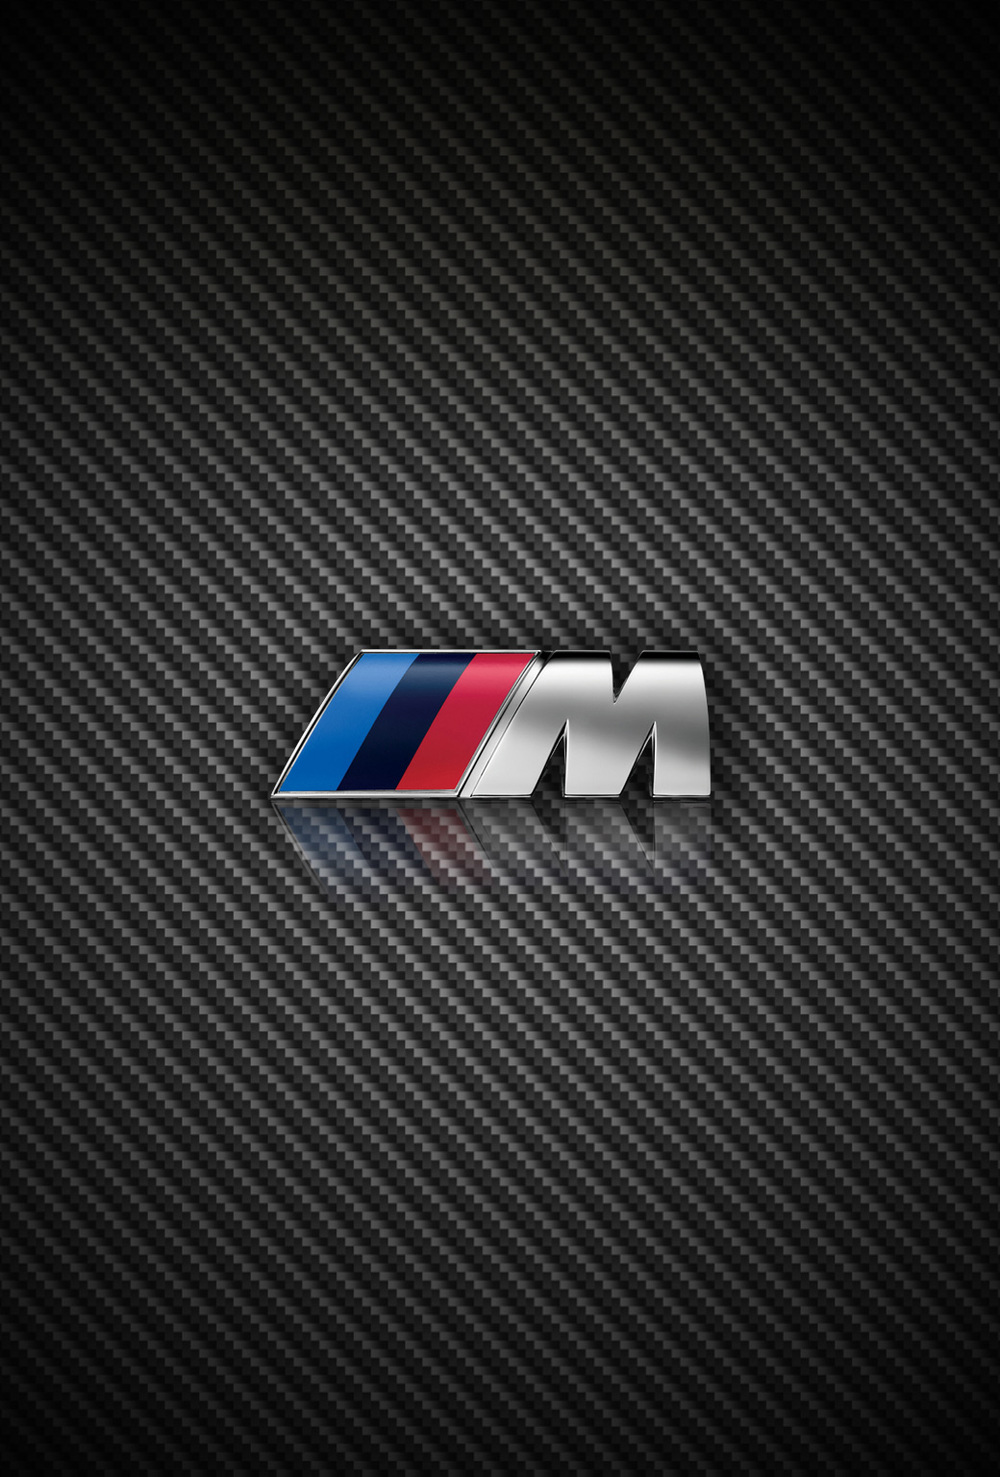 Bmw Logo Iphone Wallpaper - image